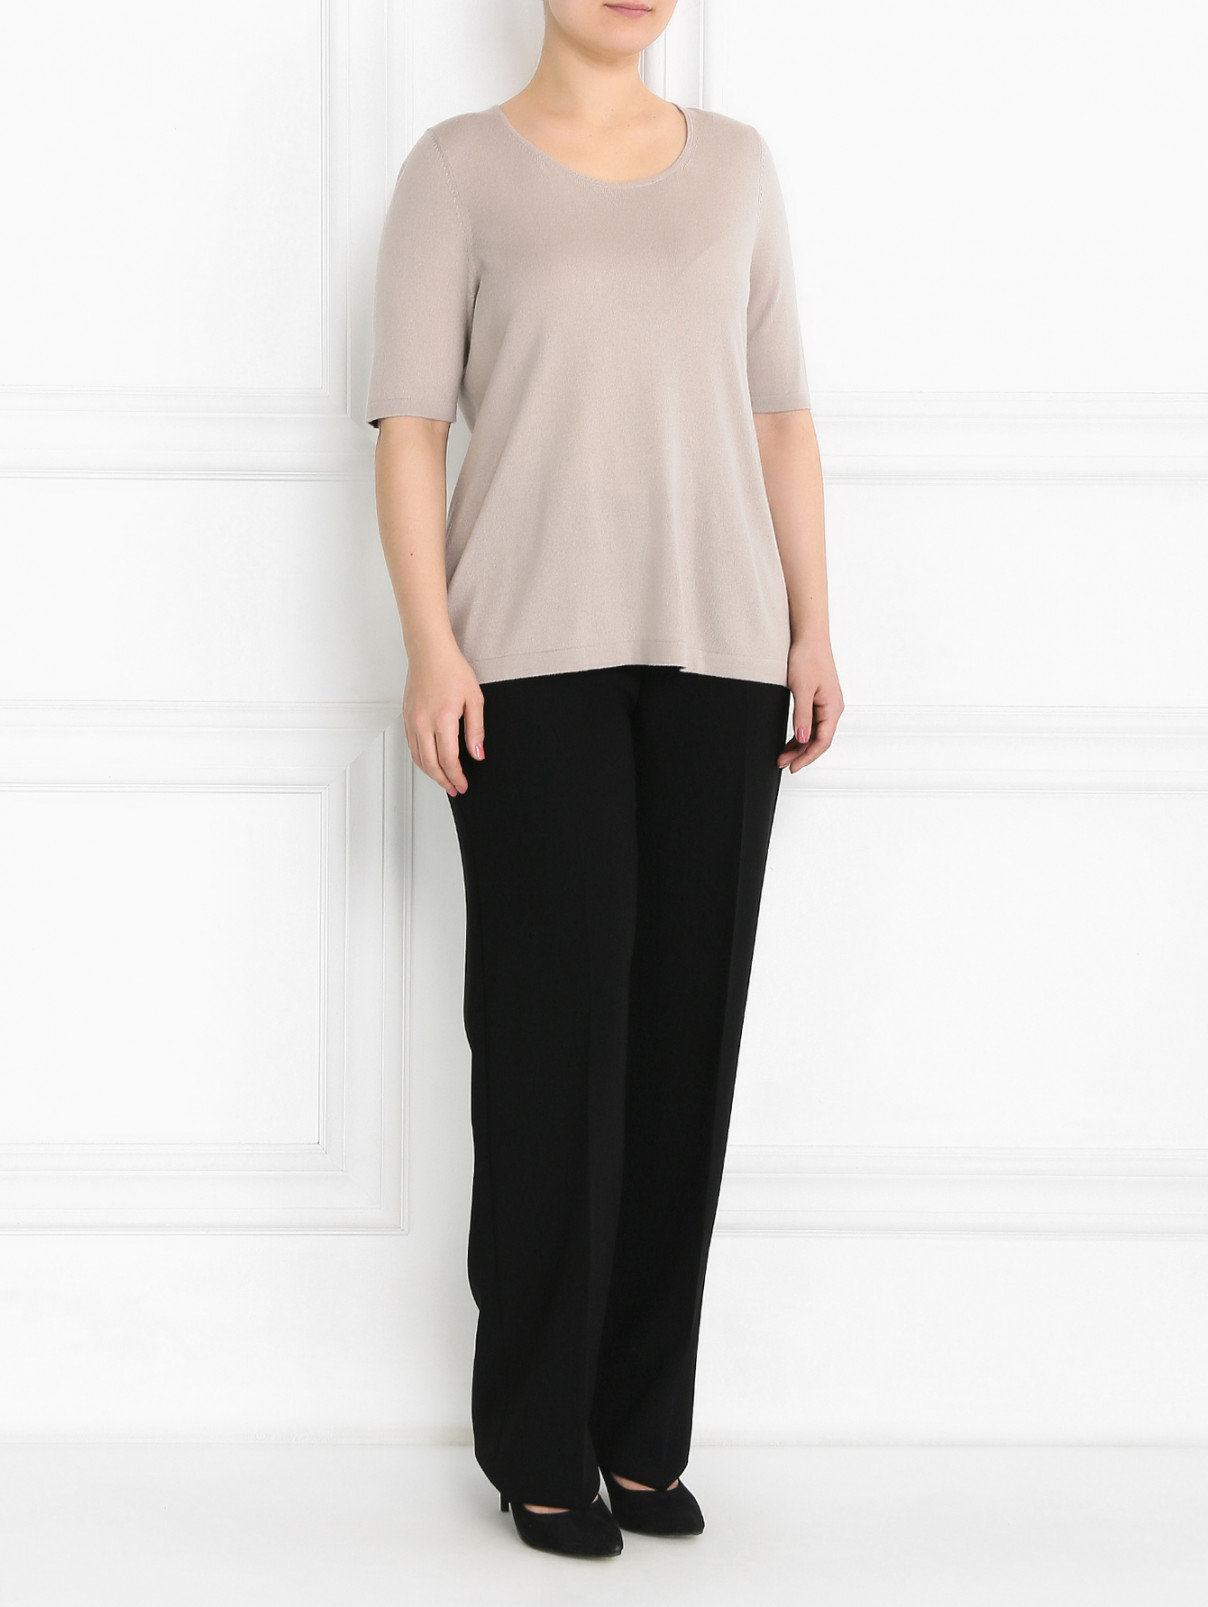 Прямые классические брюки Marina Rinaldi  –  Модель Общий вид  – Цвет:  Черный